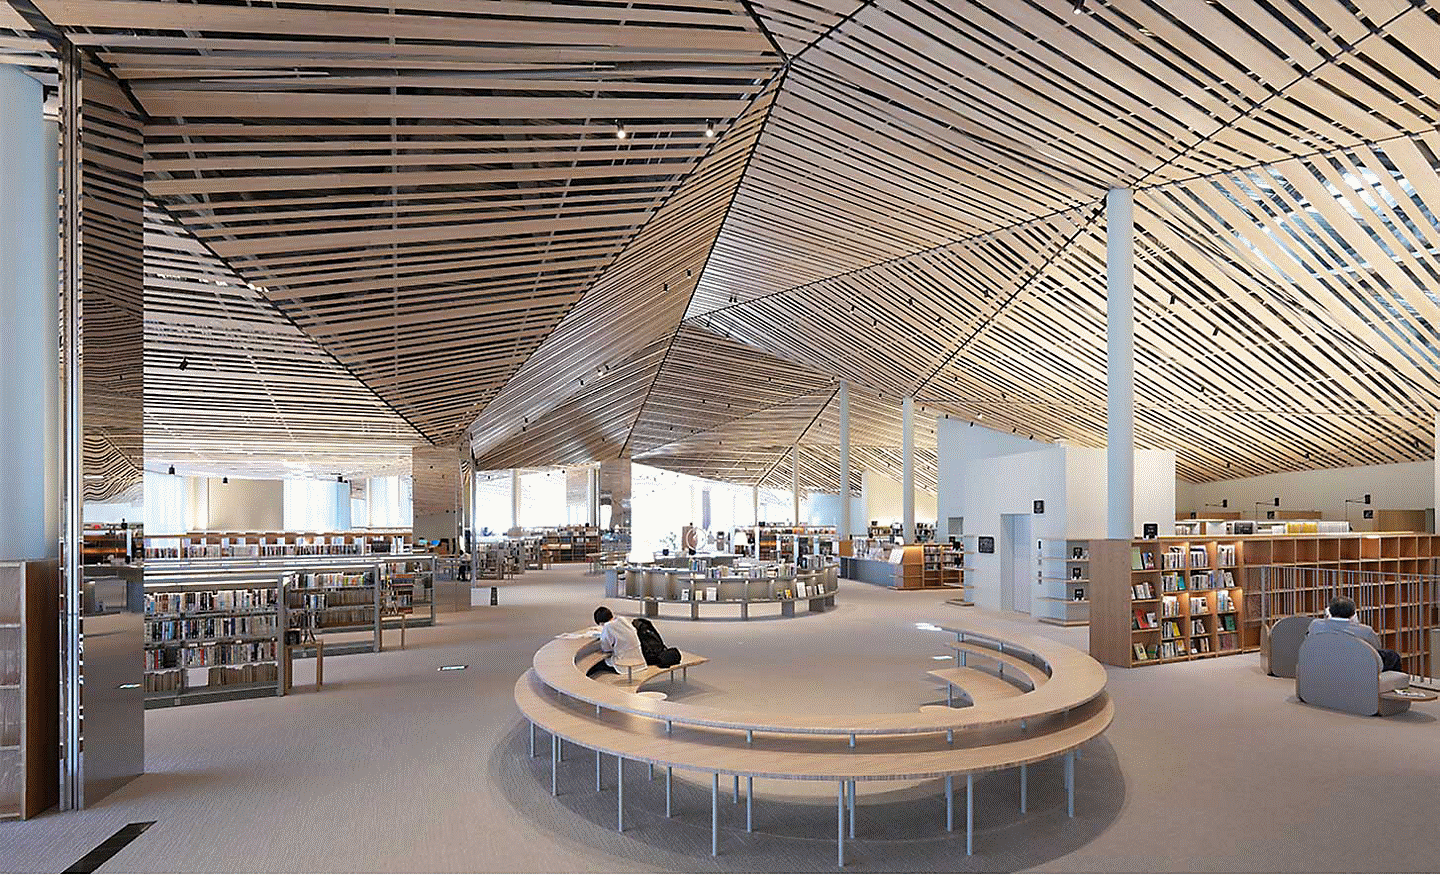 Image d'une grande bibliothèque au design élaboré avec des planches de bois droites au plafond, avec une résolution uniforme sur l'intégralité de l'écran